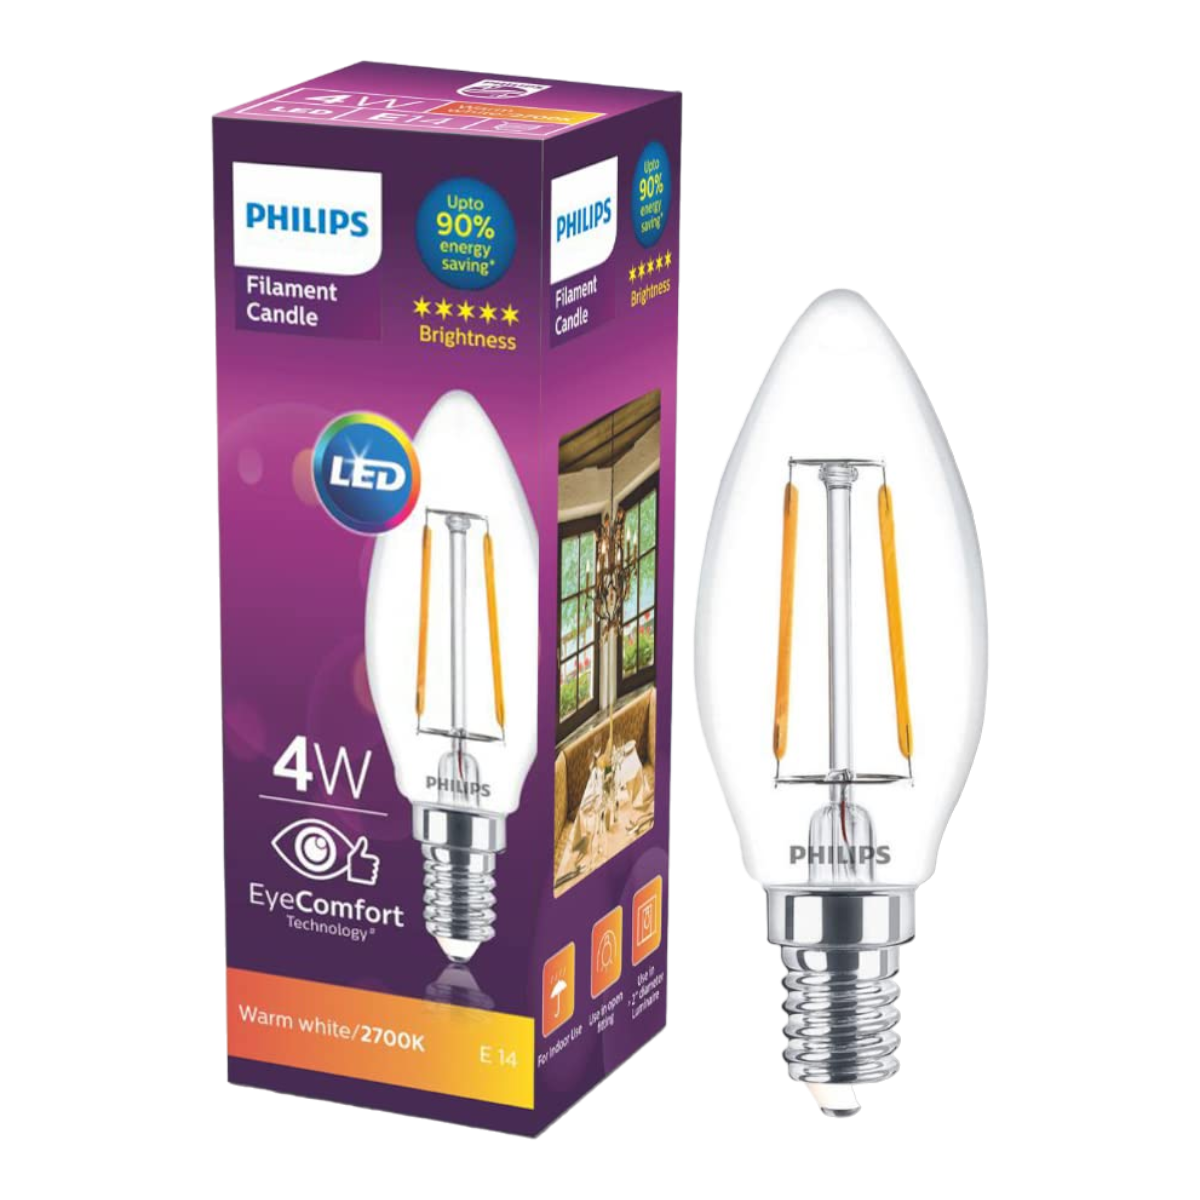 Philips Filament LED Candle (E27 base)